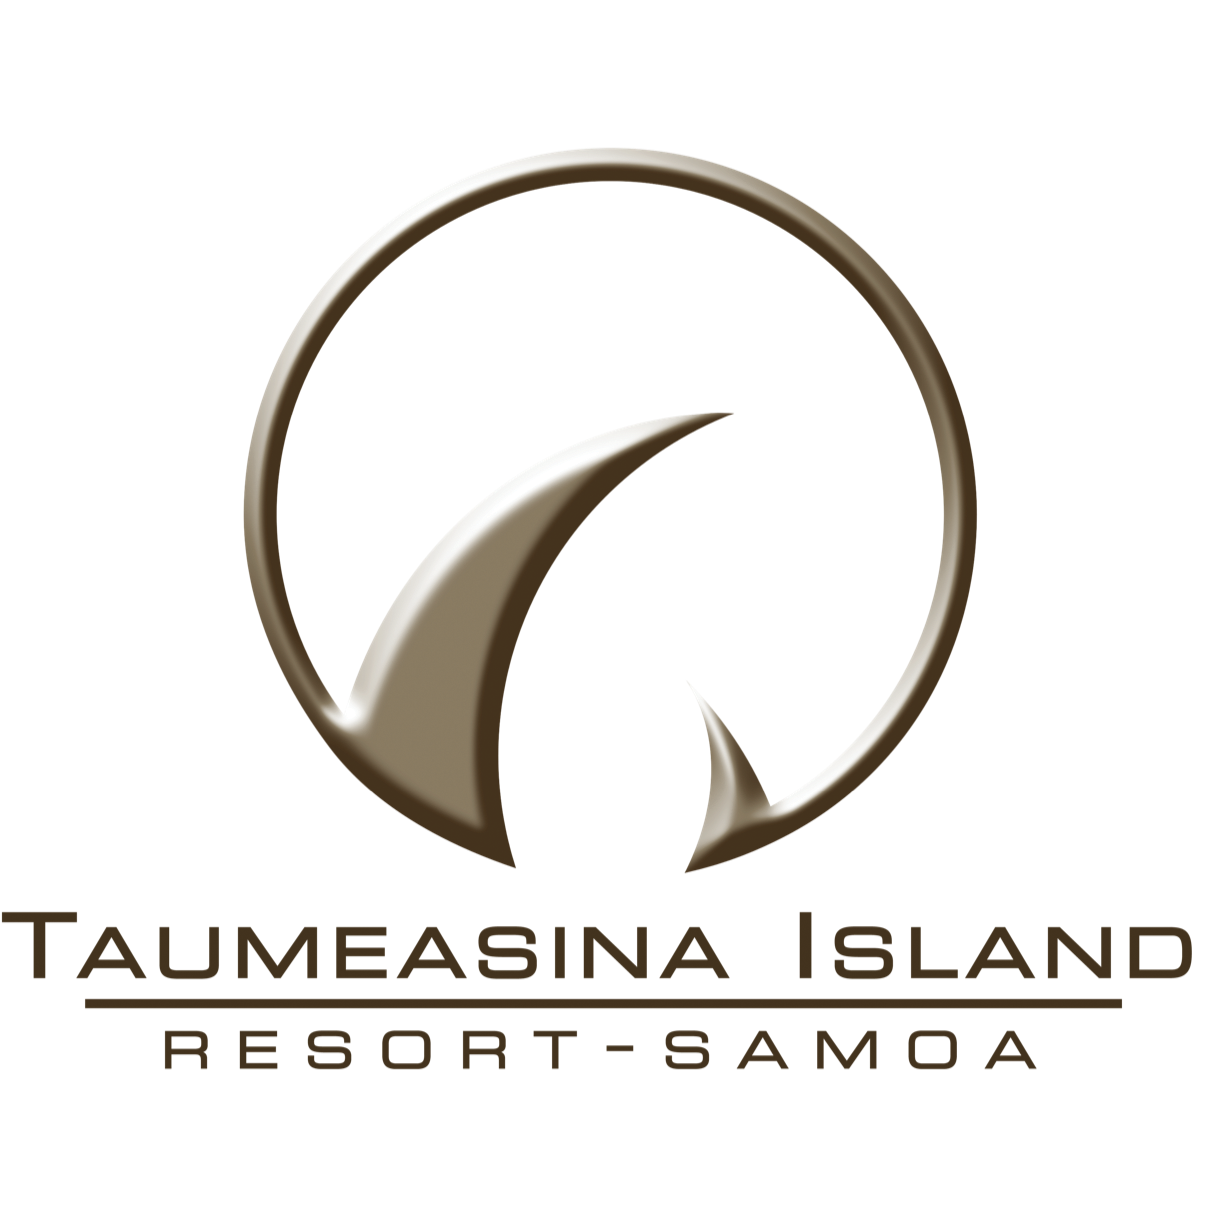 Taumeasina Island, Resort - Samoa